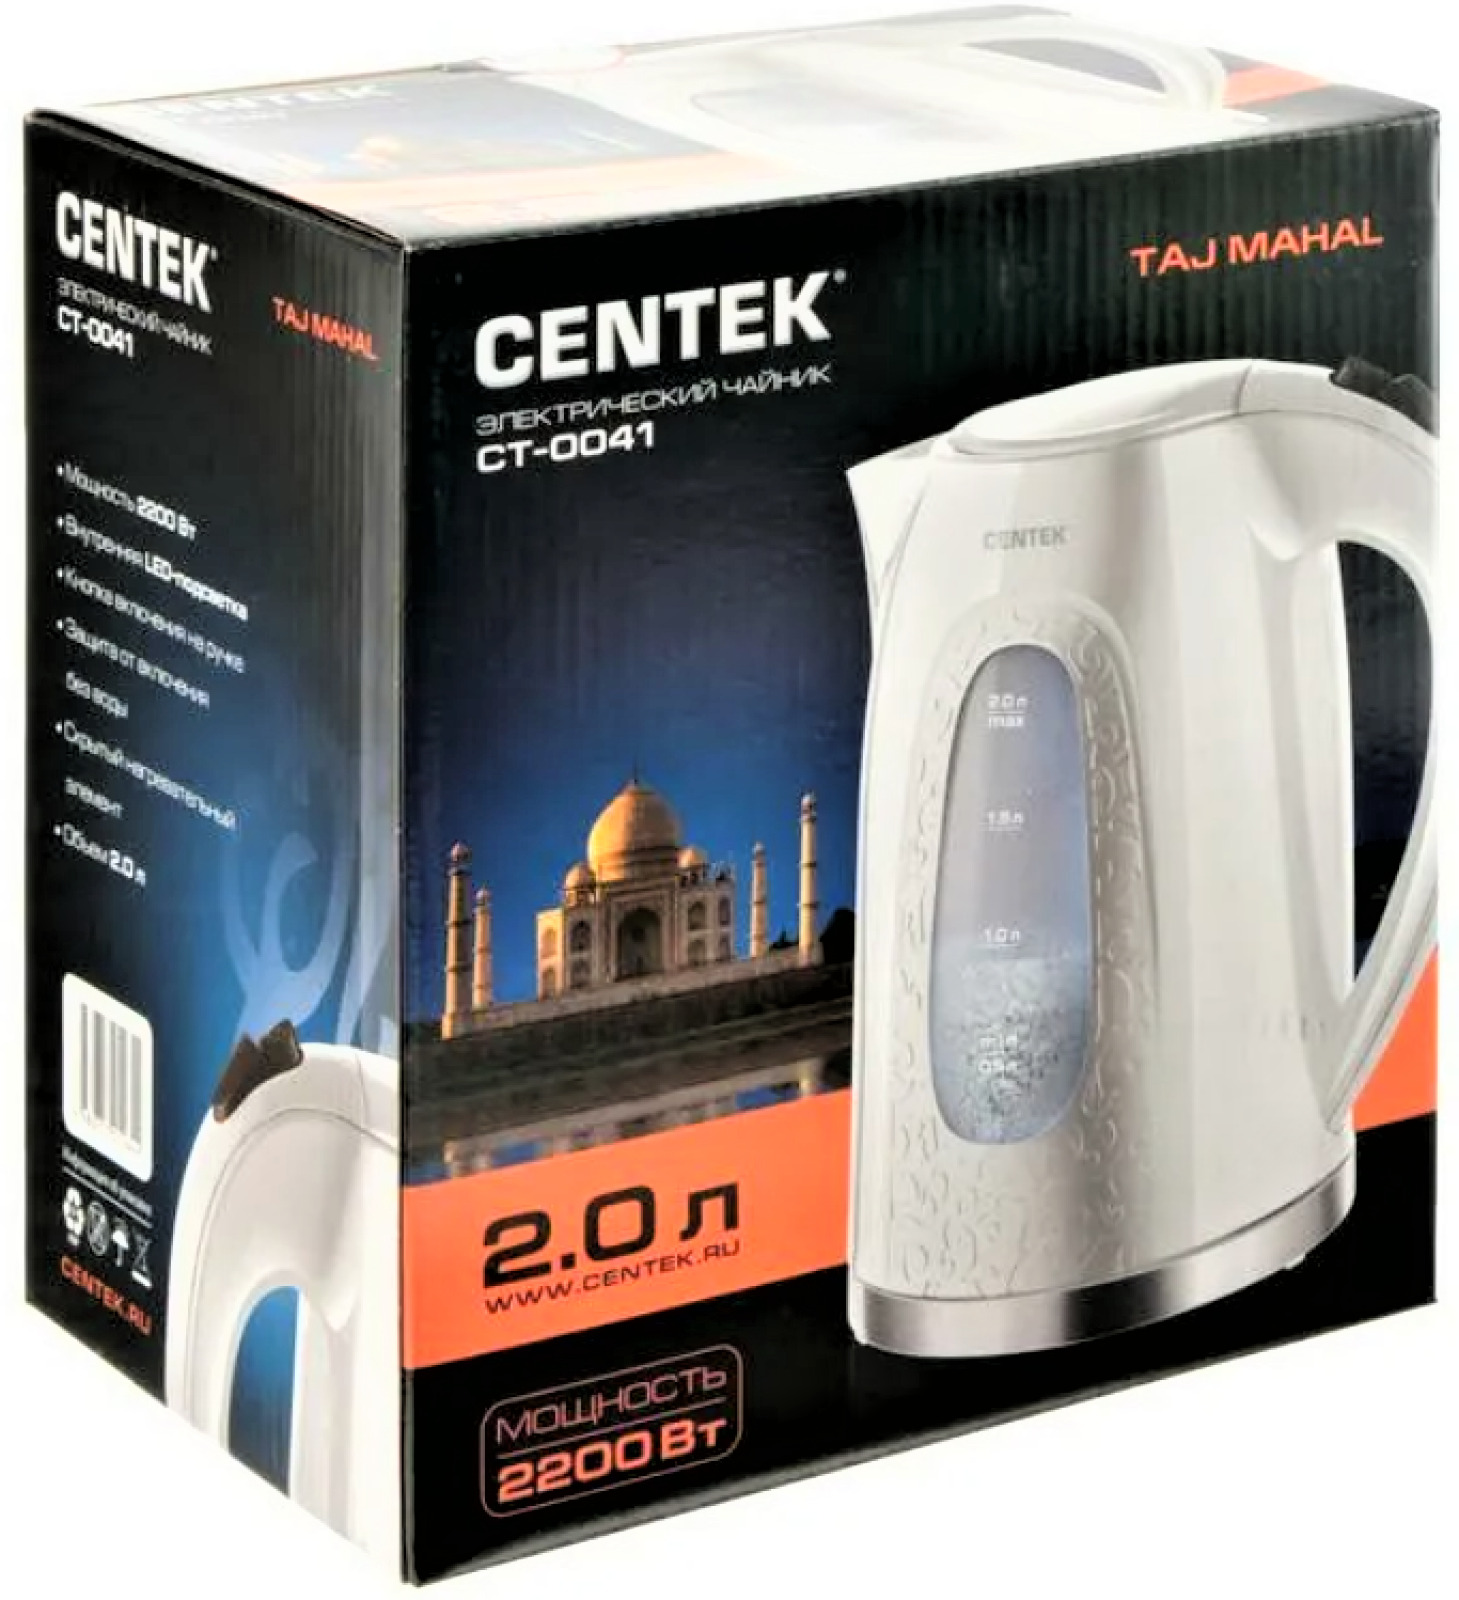 Сен тек емес. CENTEK CT-0041. CENTEK CT-0041 белый. Чайник электрический СЕНТЕК. Чайник CENTEK CT-0041 (черный).